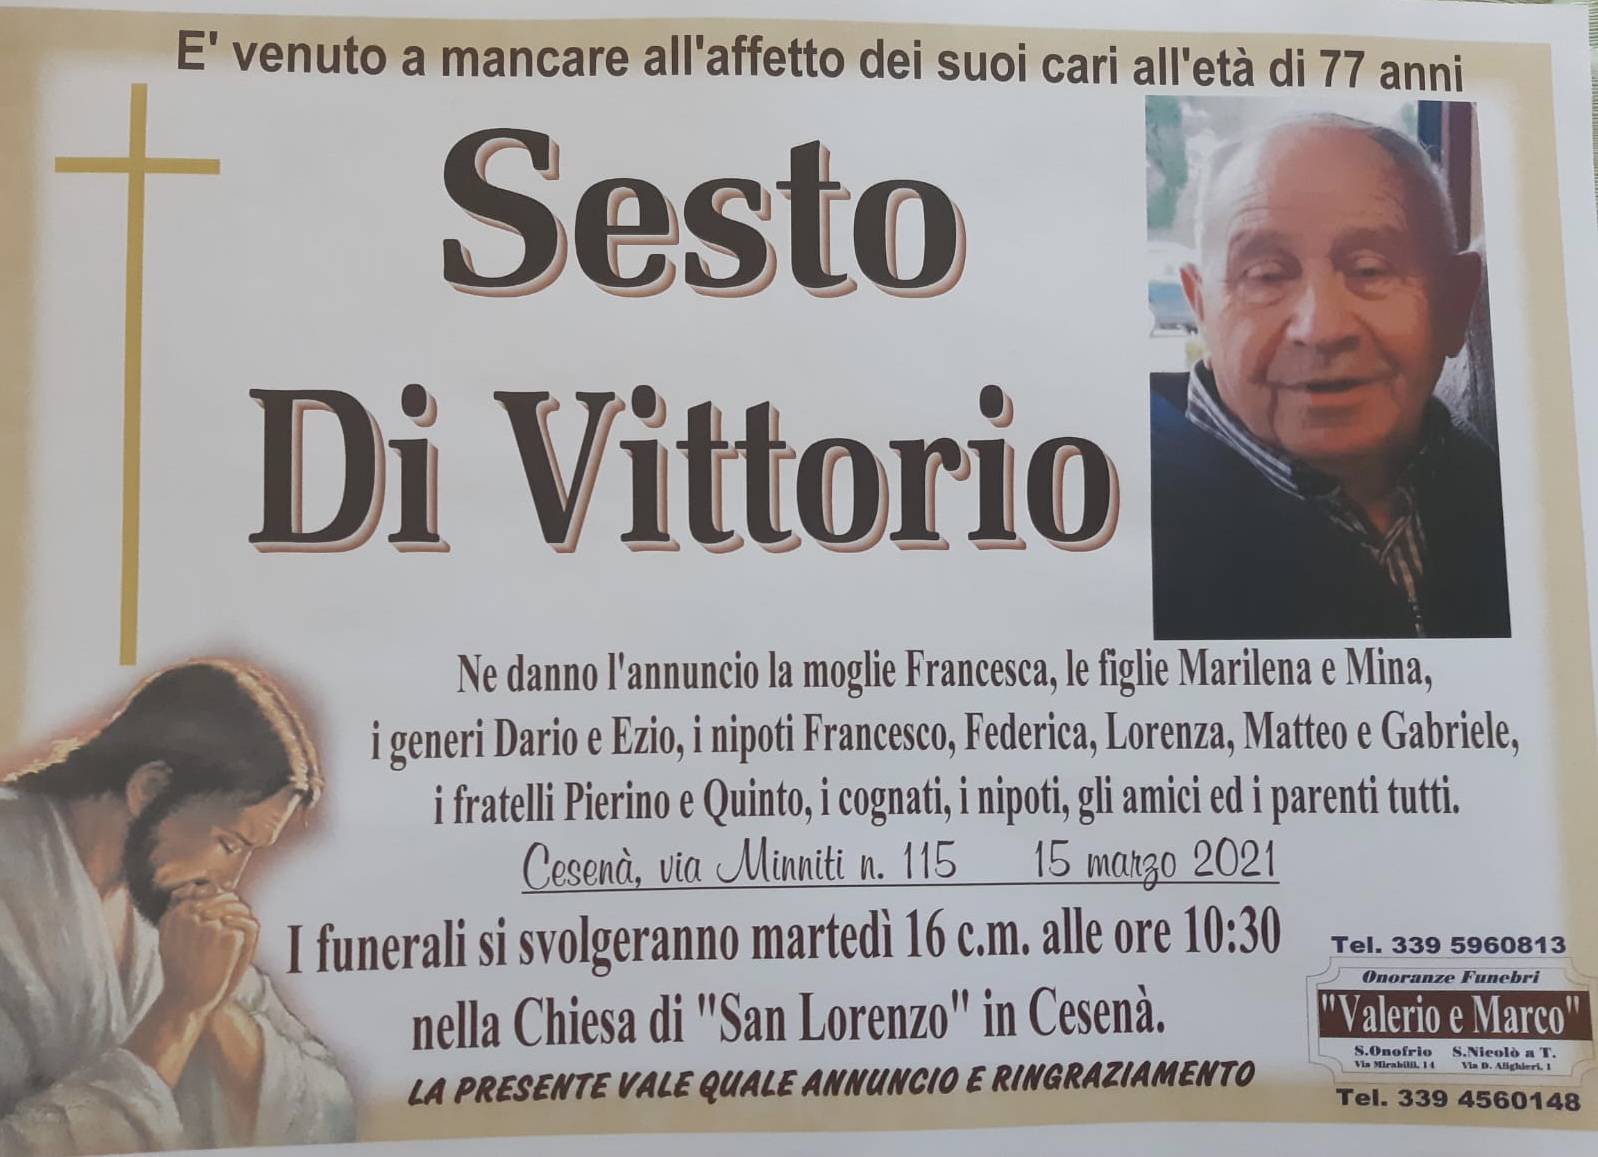 Sesto Di Vittorio